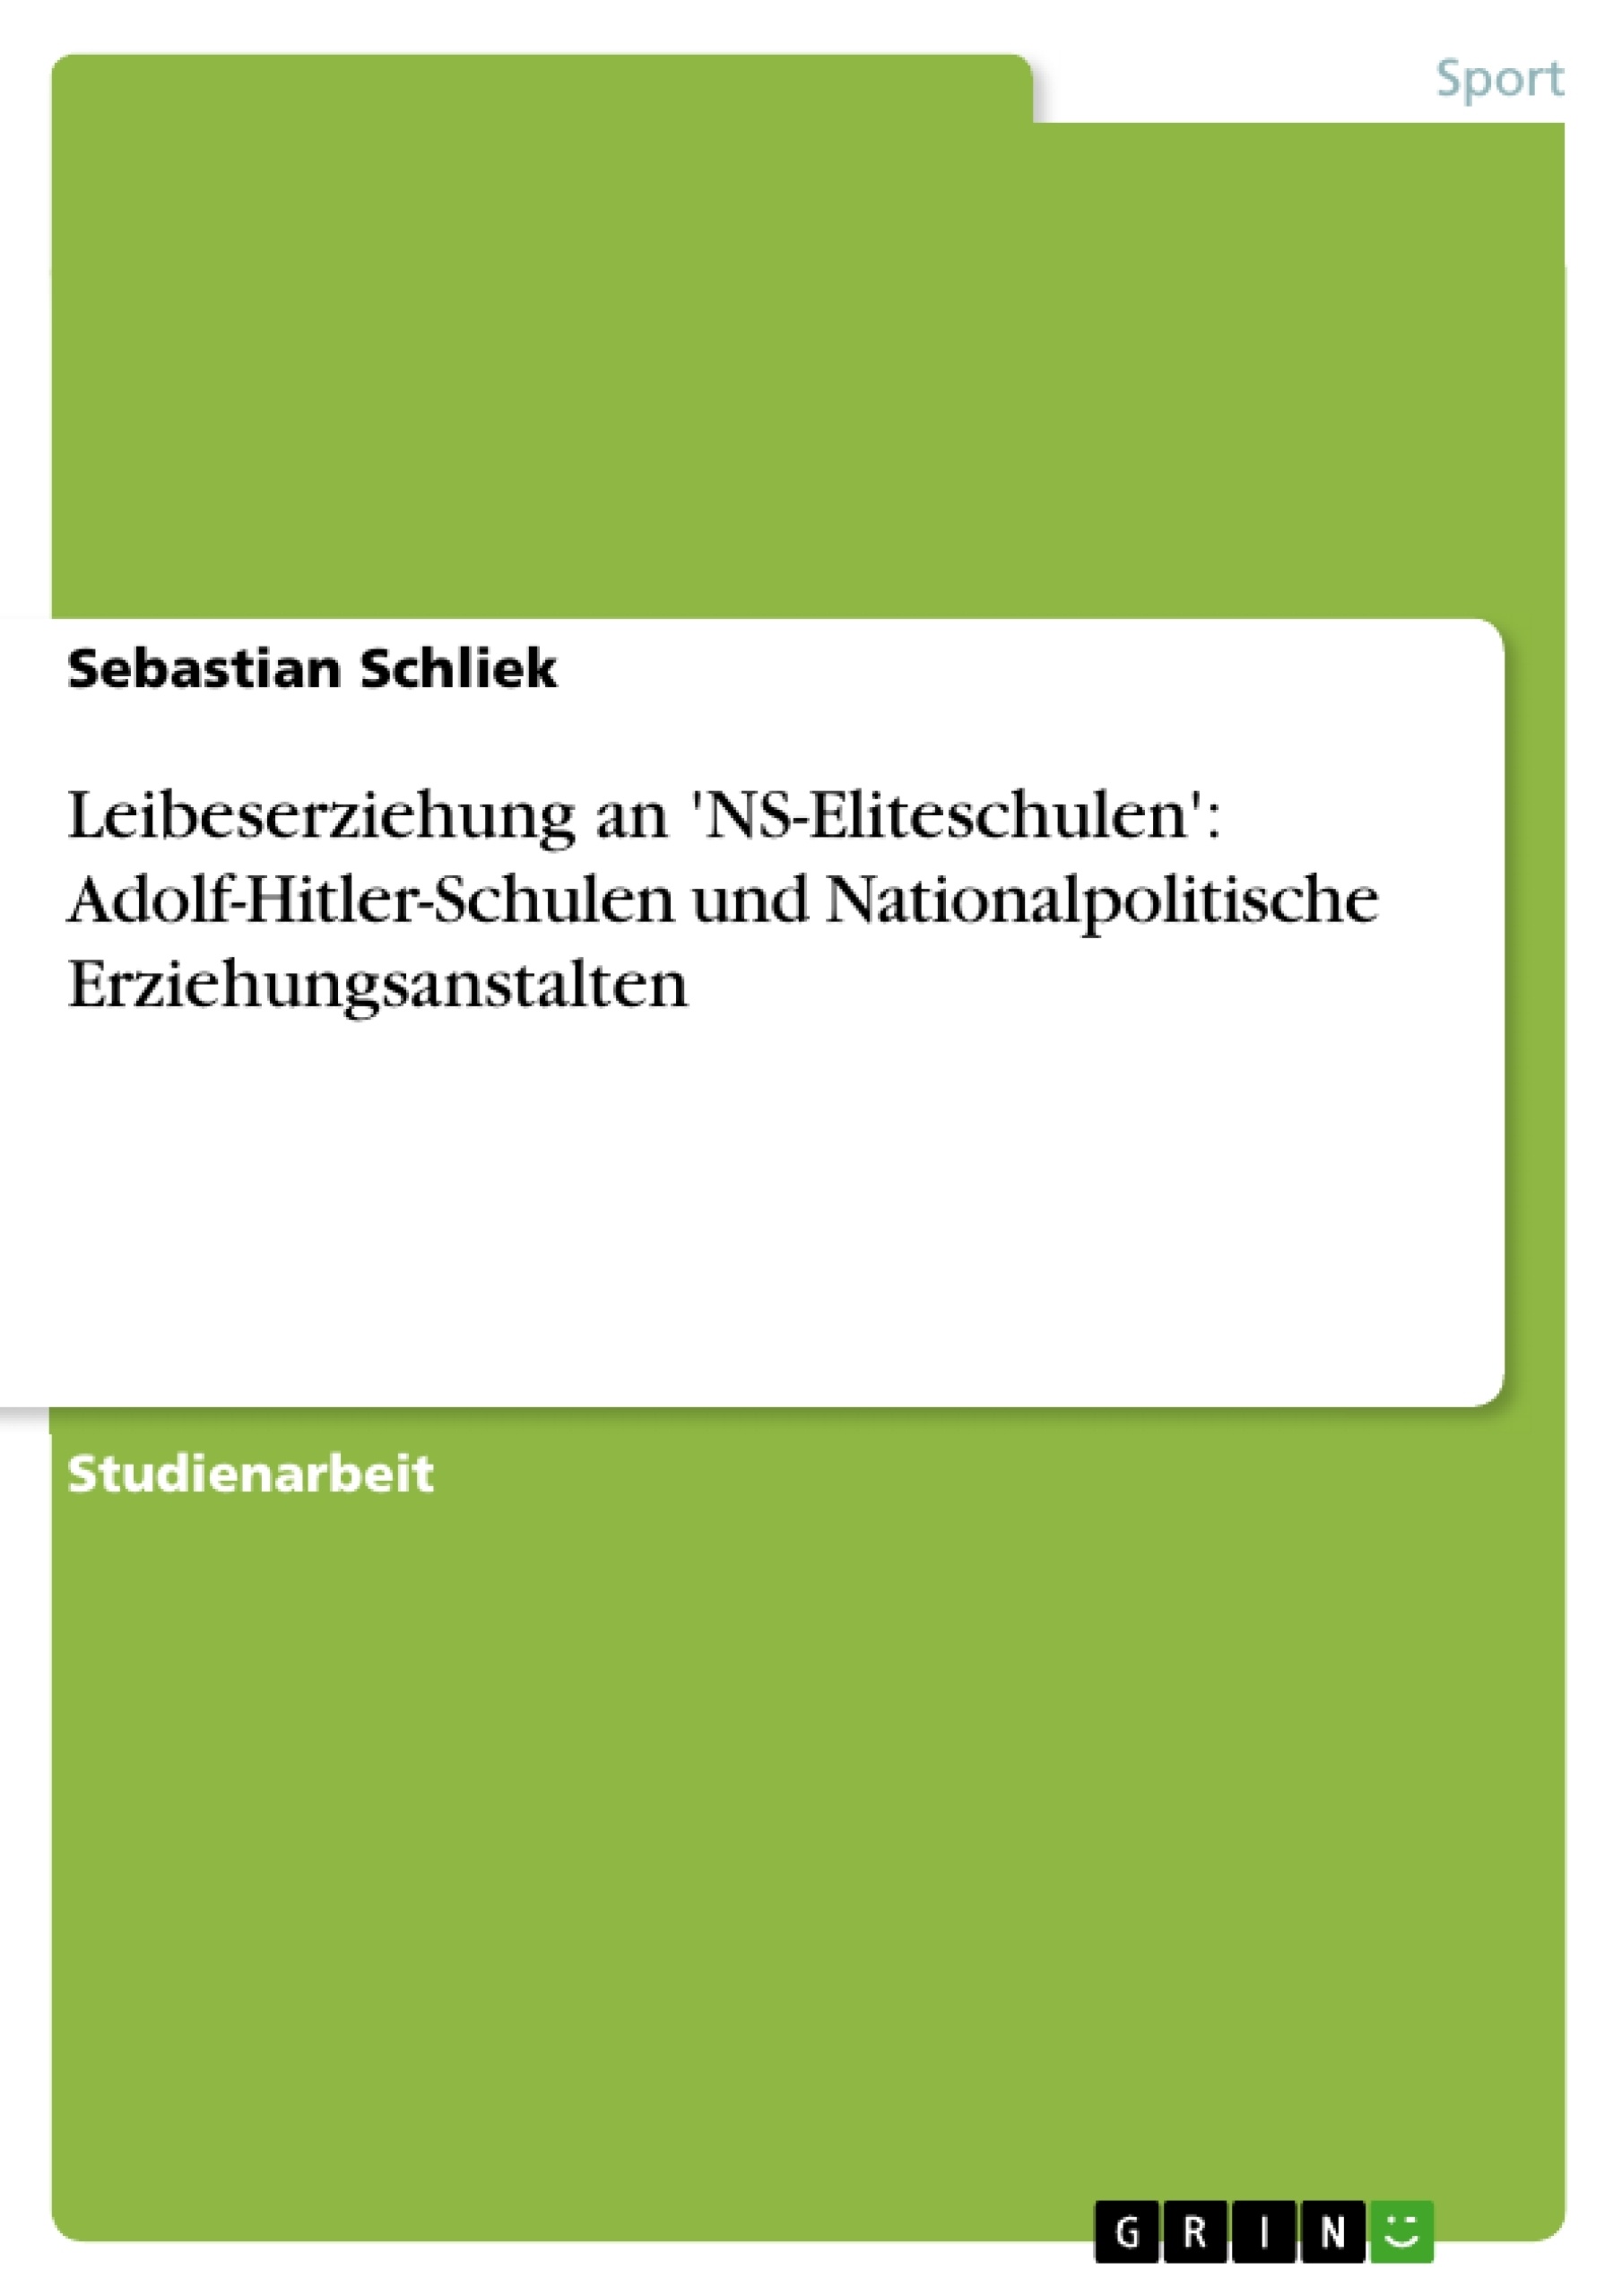 Titre: Leibeserziehung an 'NS-Eliteschulen': Adolf-Hitler-Schulen und Nationalpolitische Erziehungsanstalten